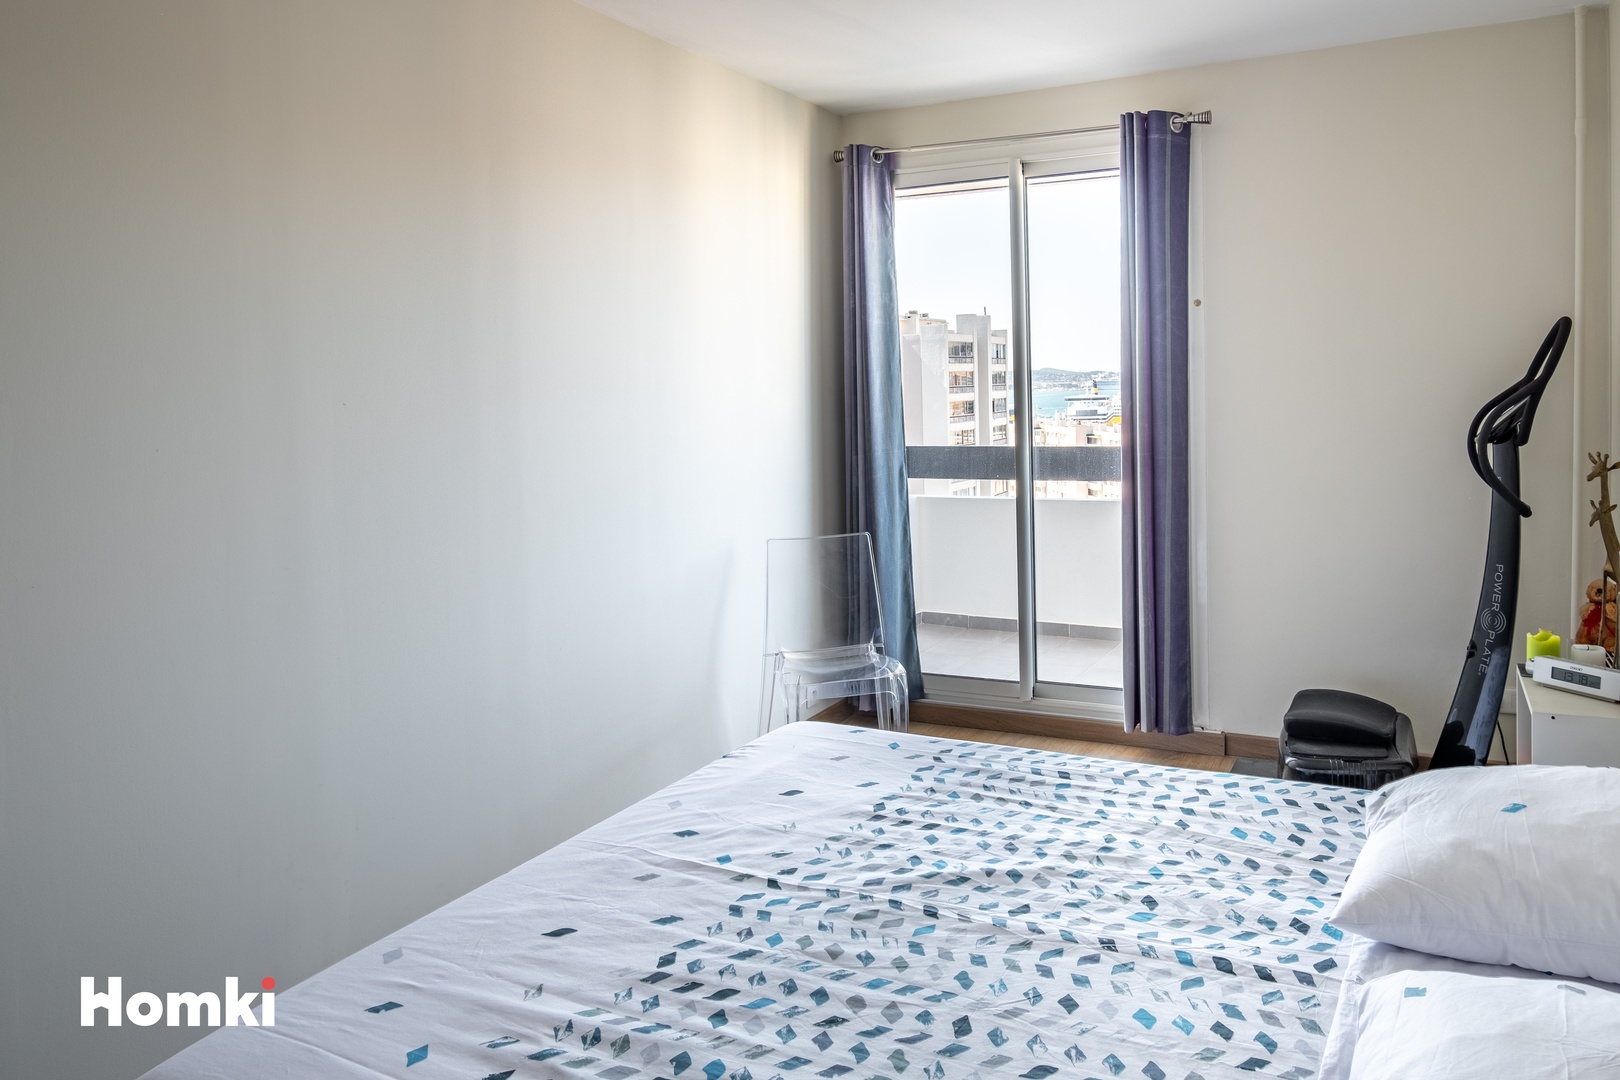 Homki - Vente Appartement  de 80.0 m² à Toulon 83000